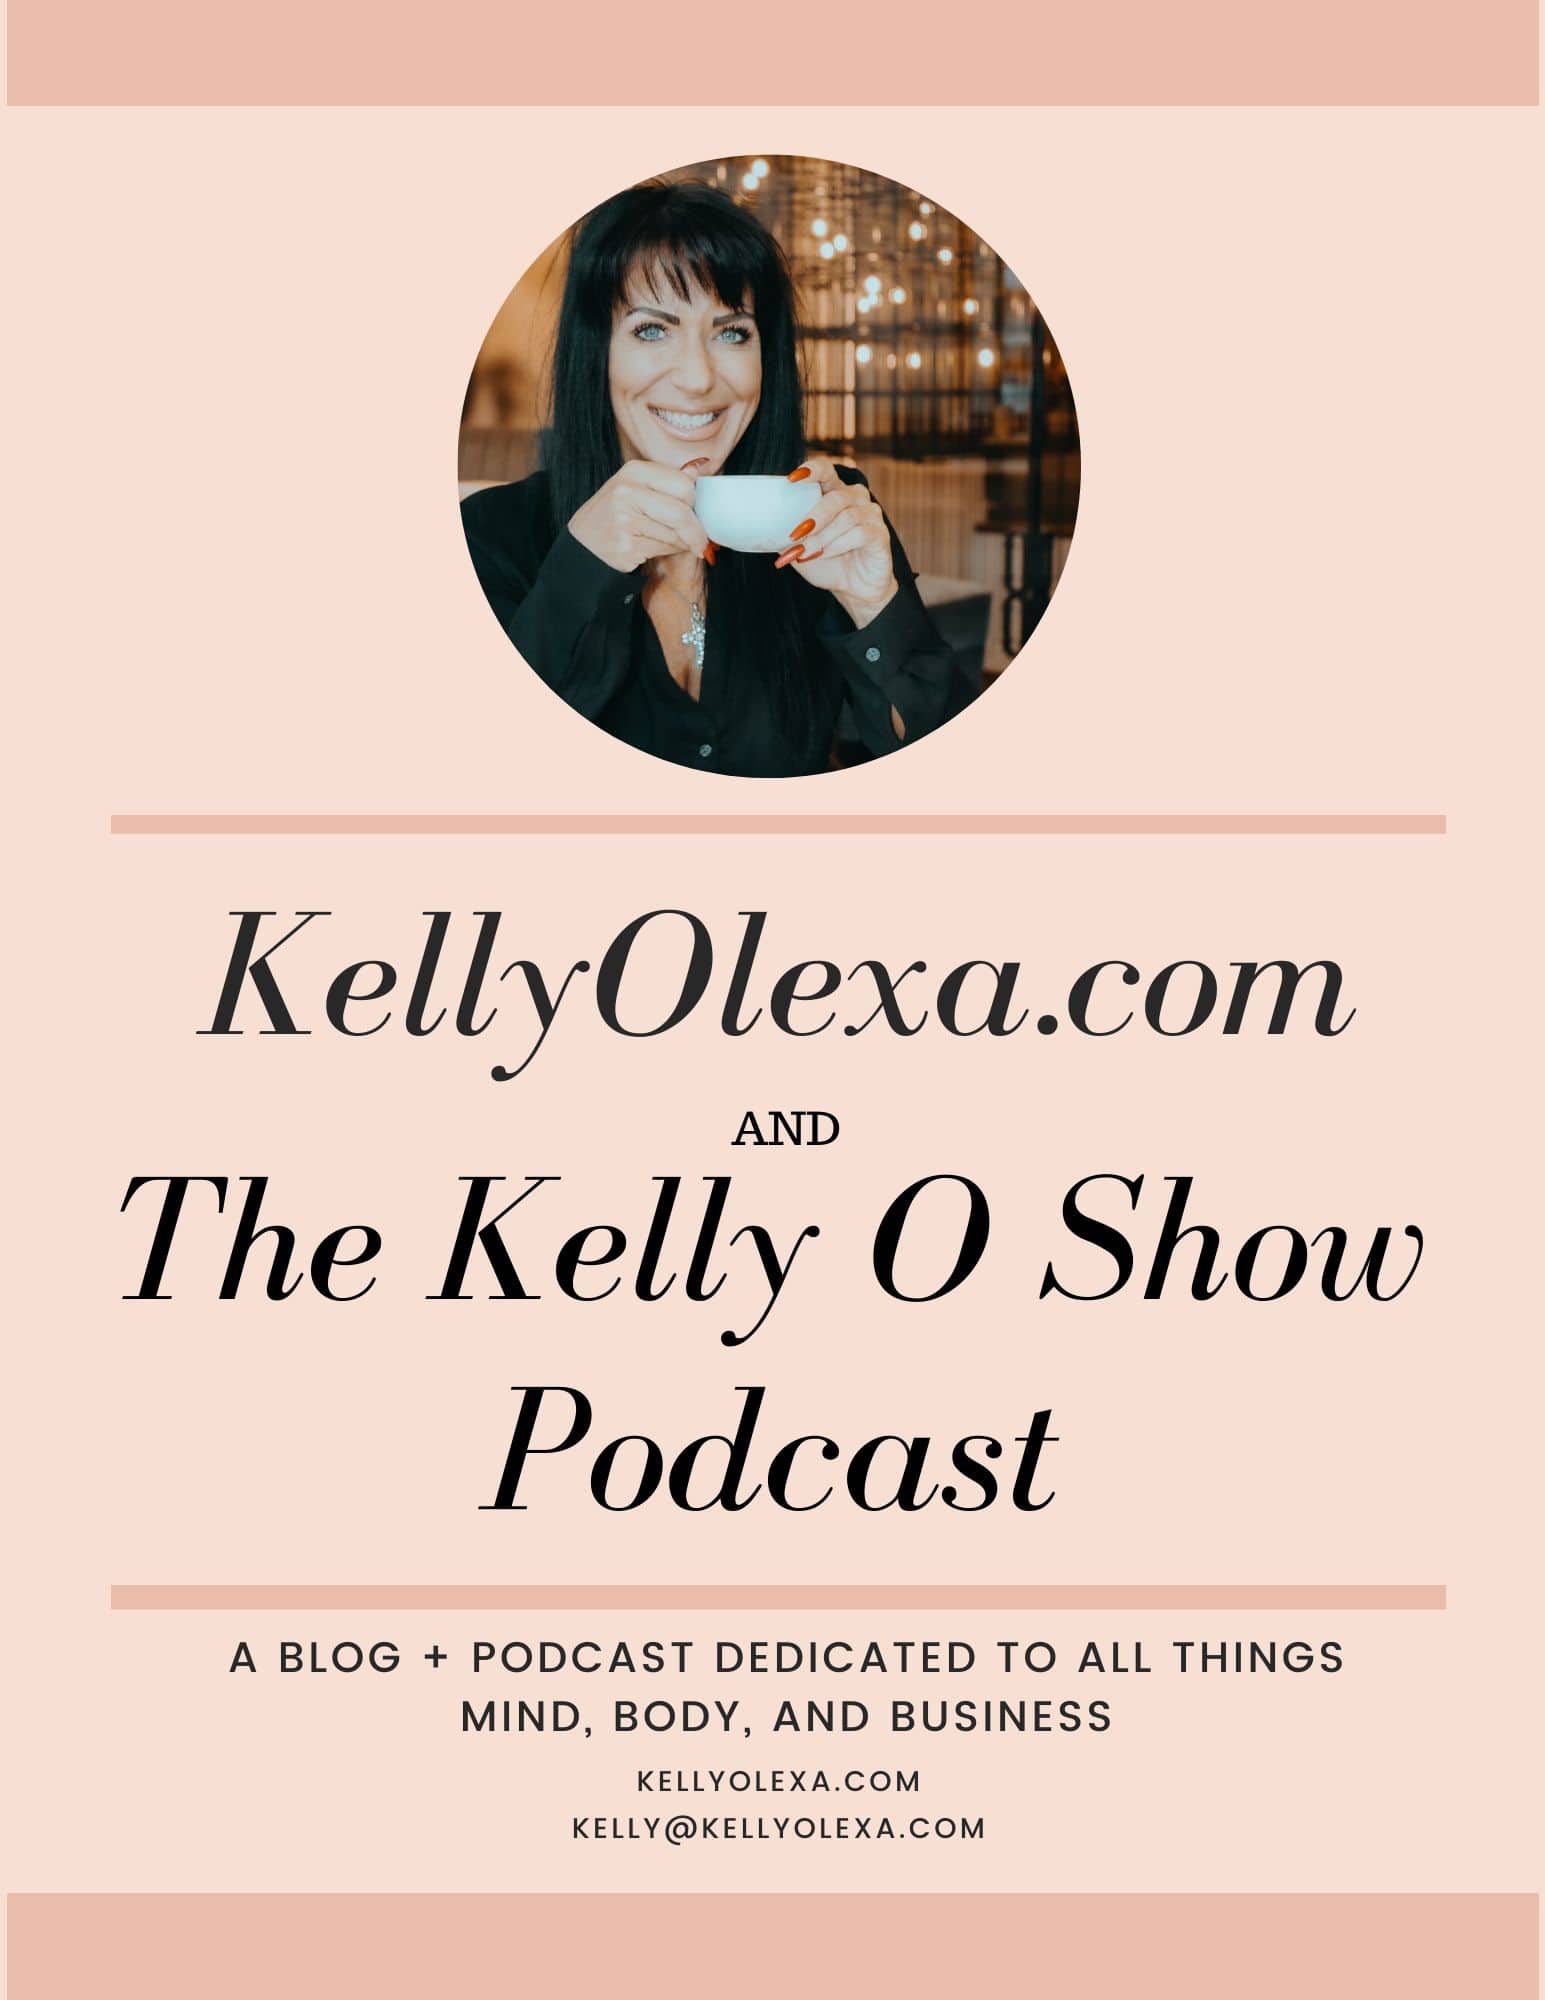 The Kelly O Show Media Kit